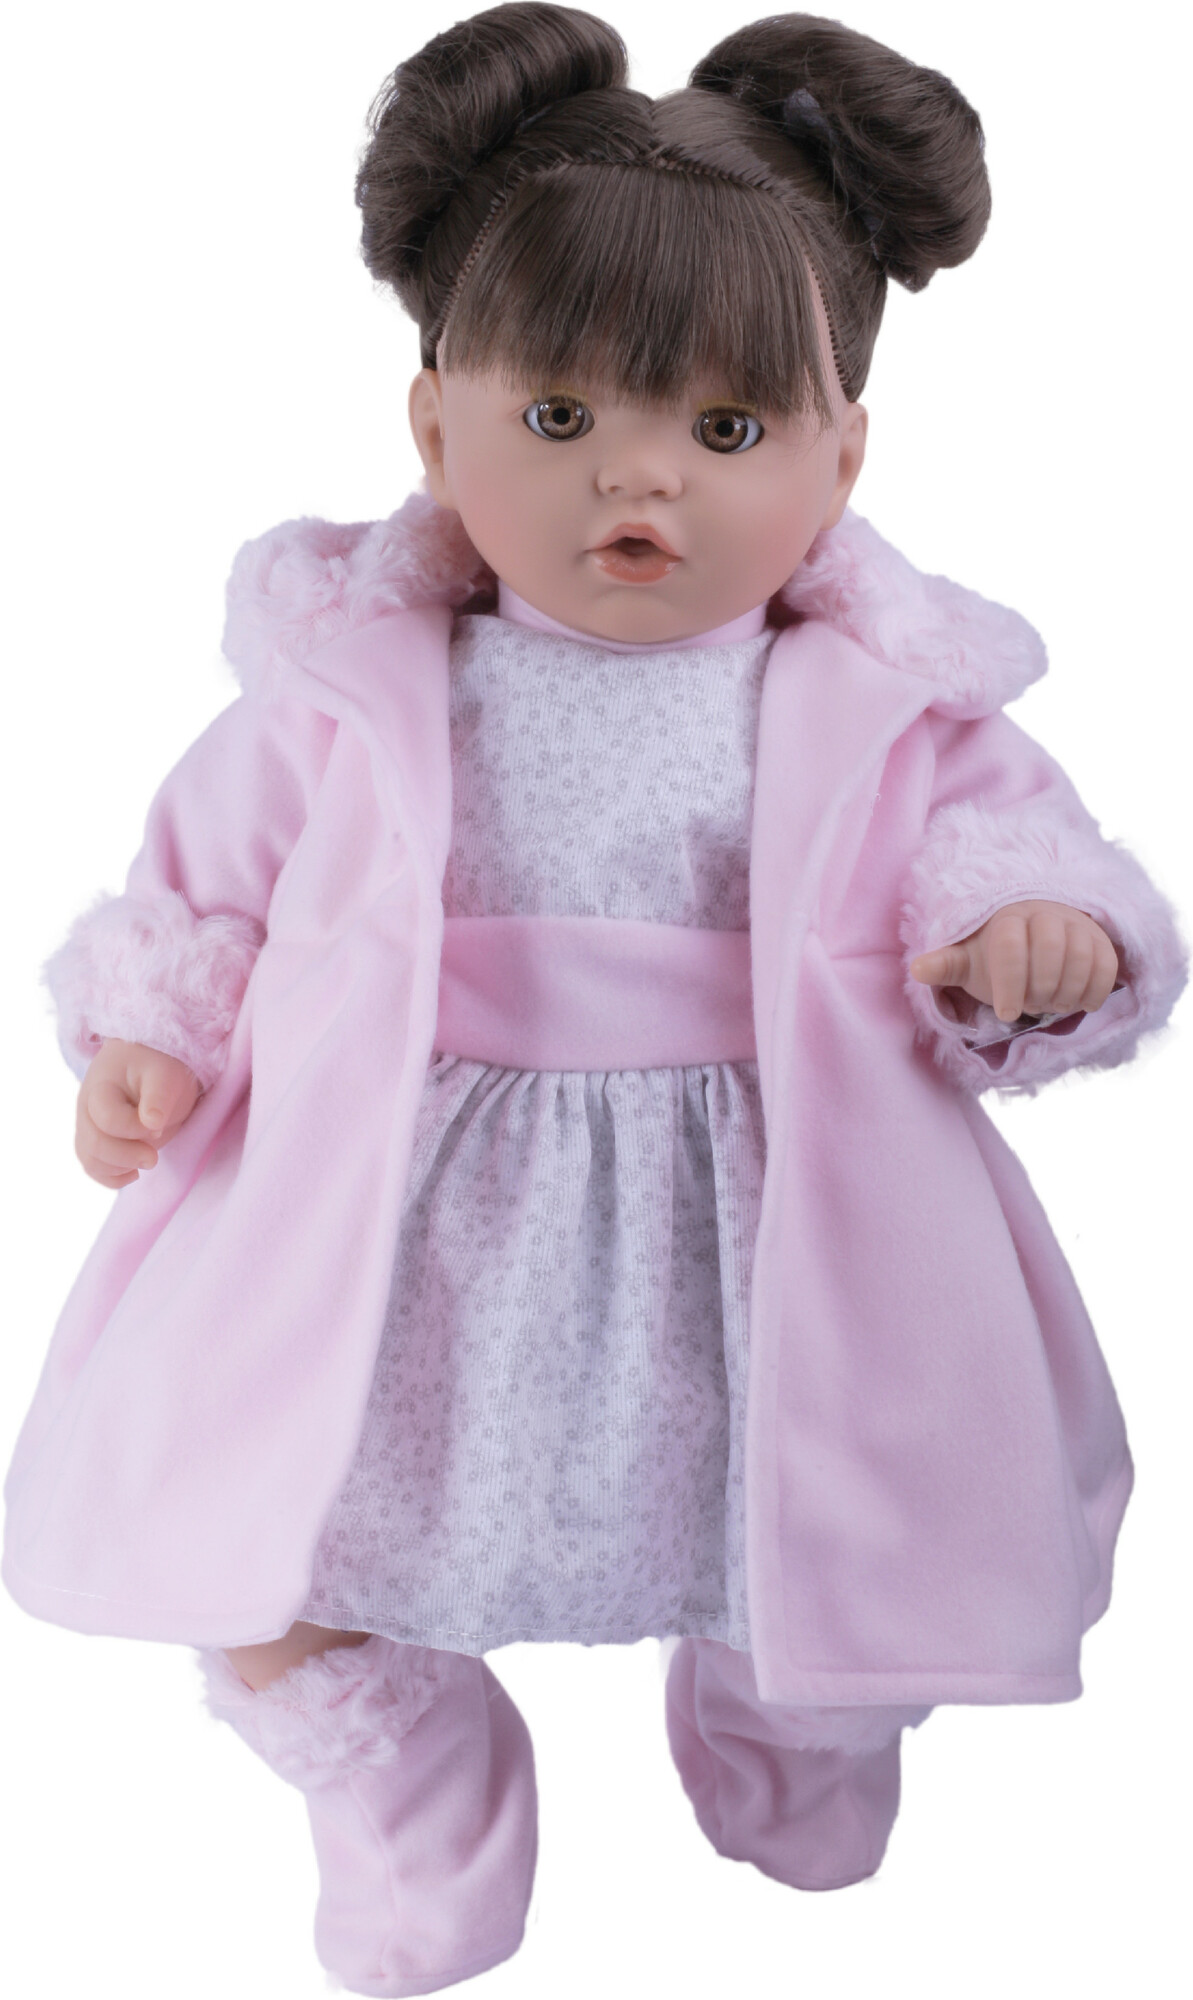 TYBER Paula hnědovláska v růžovém plačící panenka s dudlíkem, vel. S 48 cm